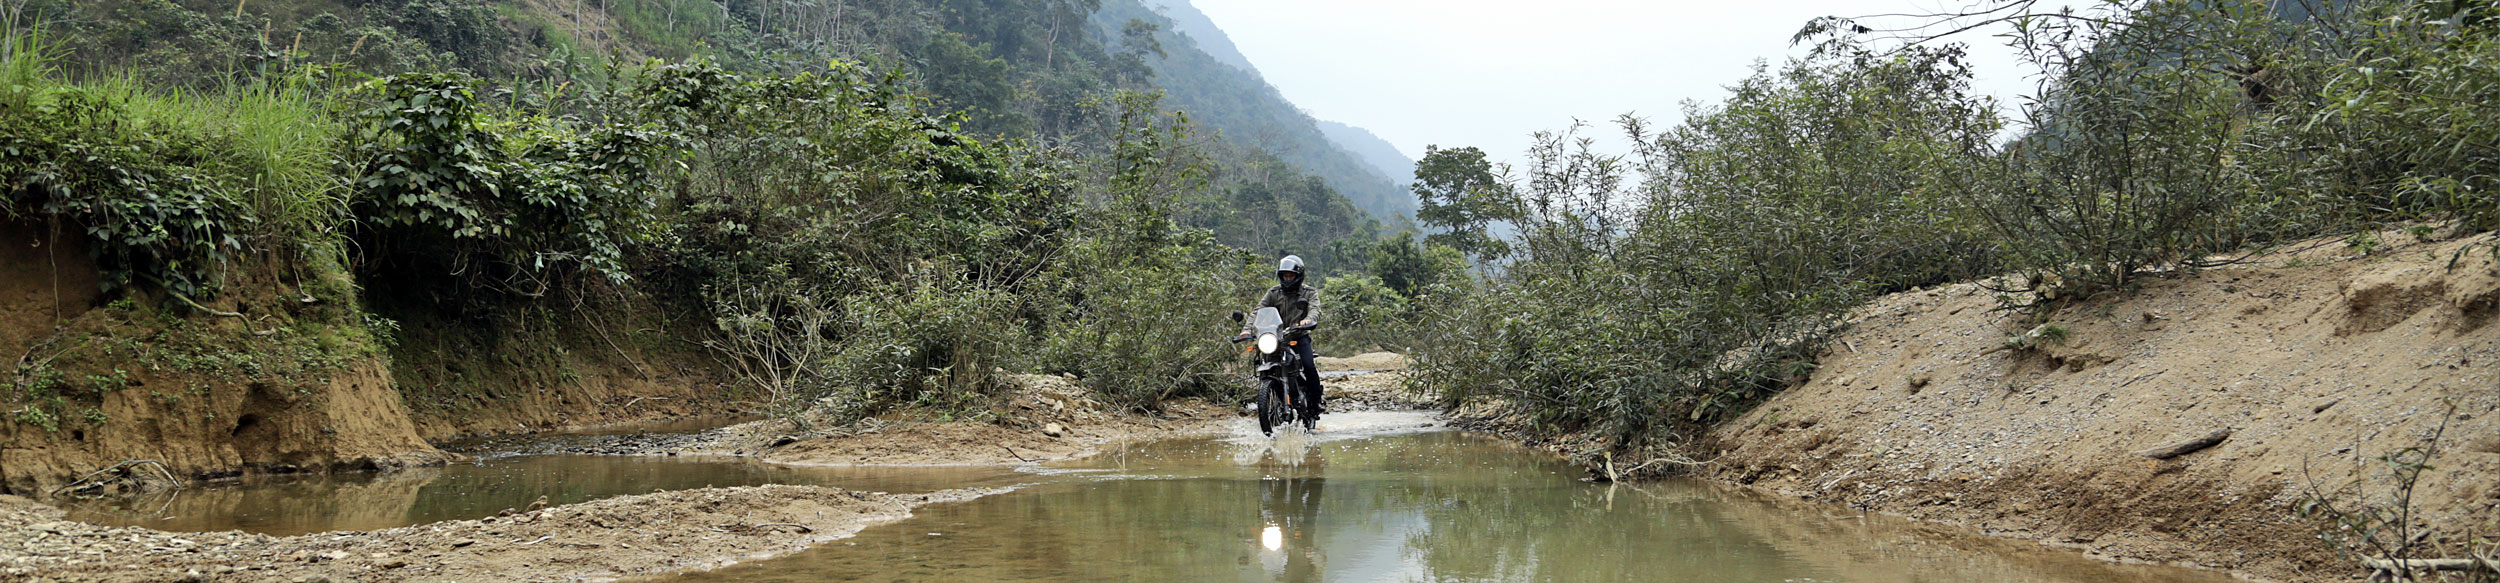 Le Vietnam à moto Ngoc Son